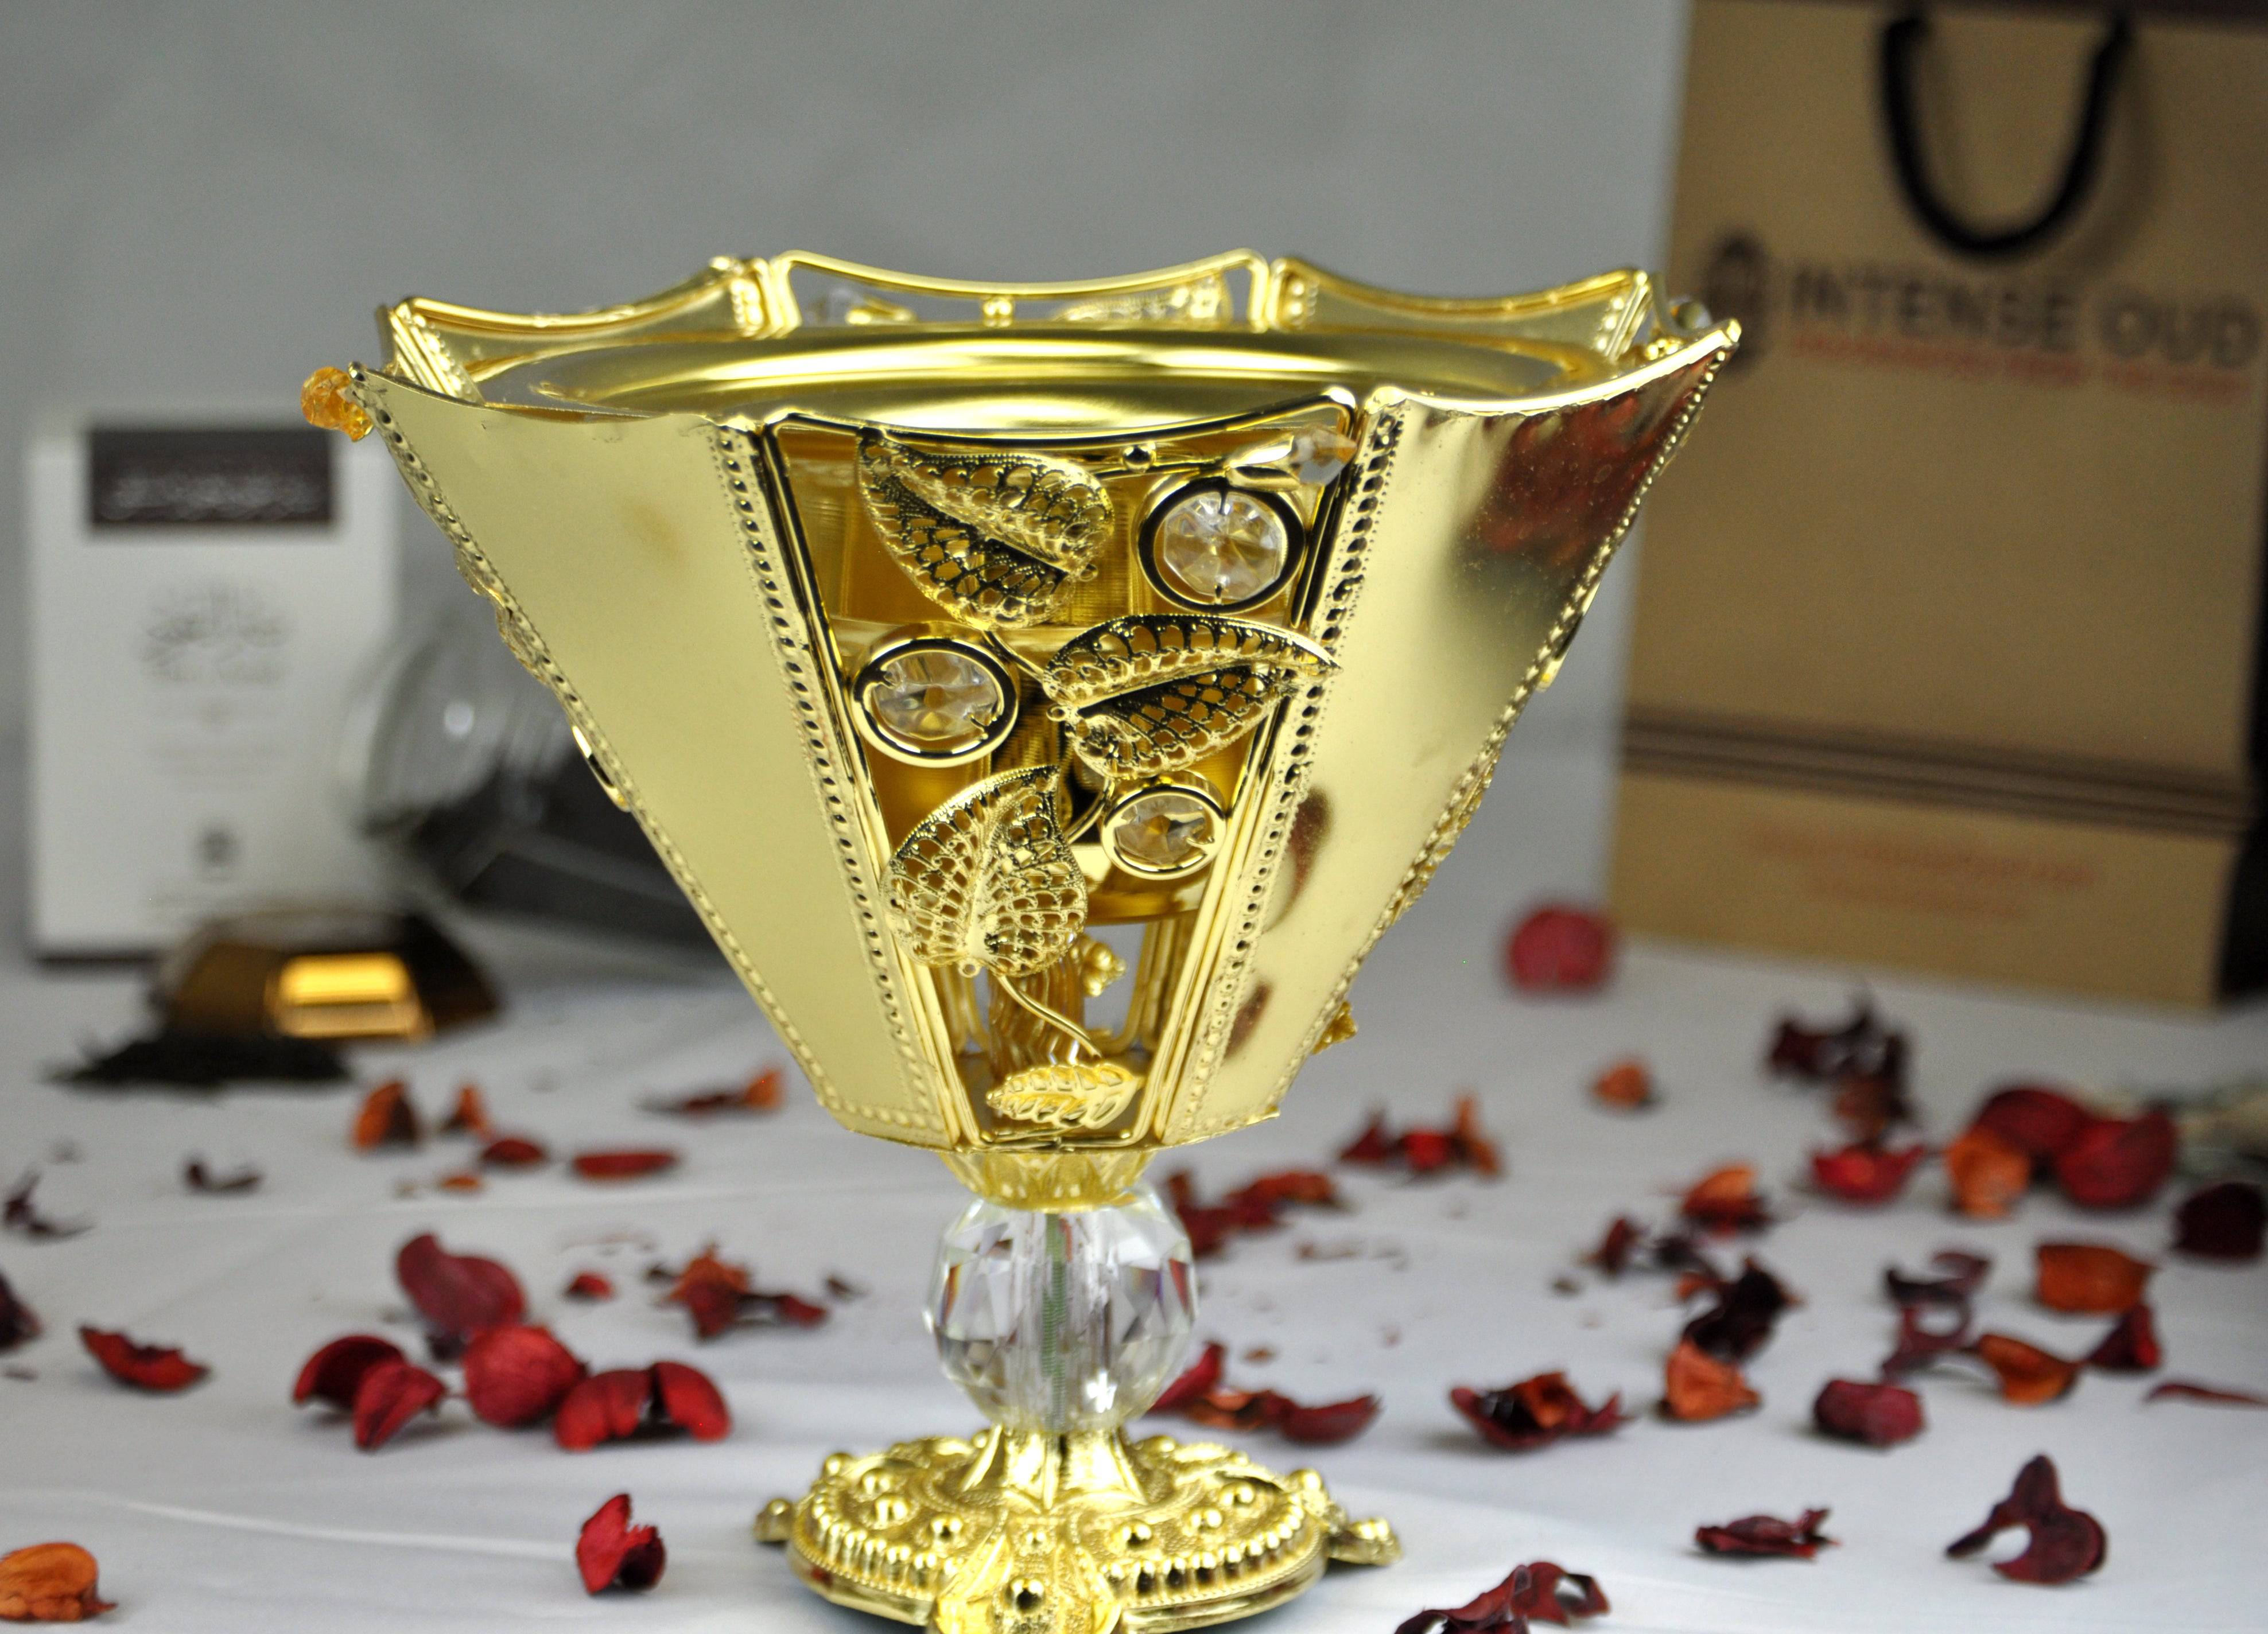 Arab Incense Bakhoor Burner - 8 inch Golden by Intense Oud